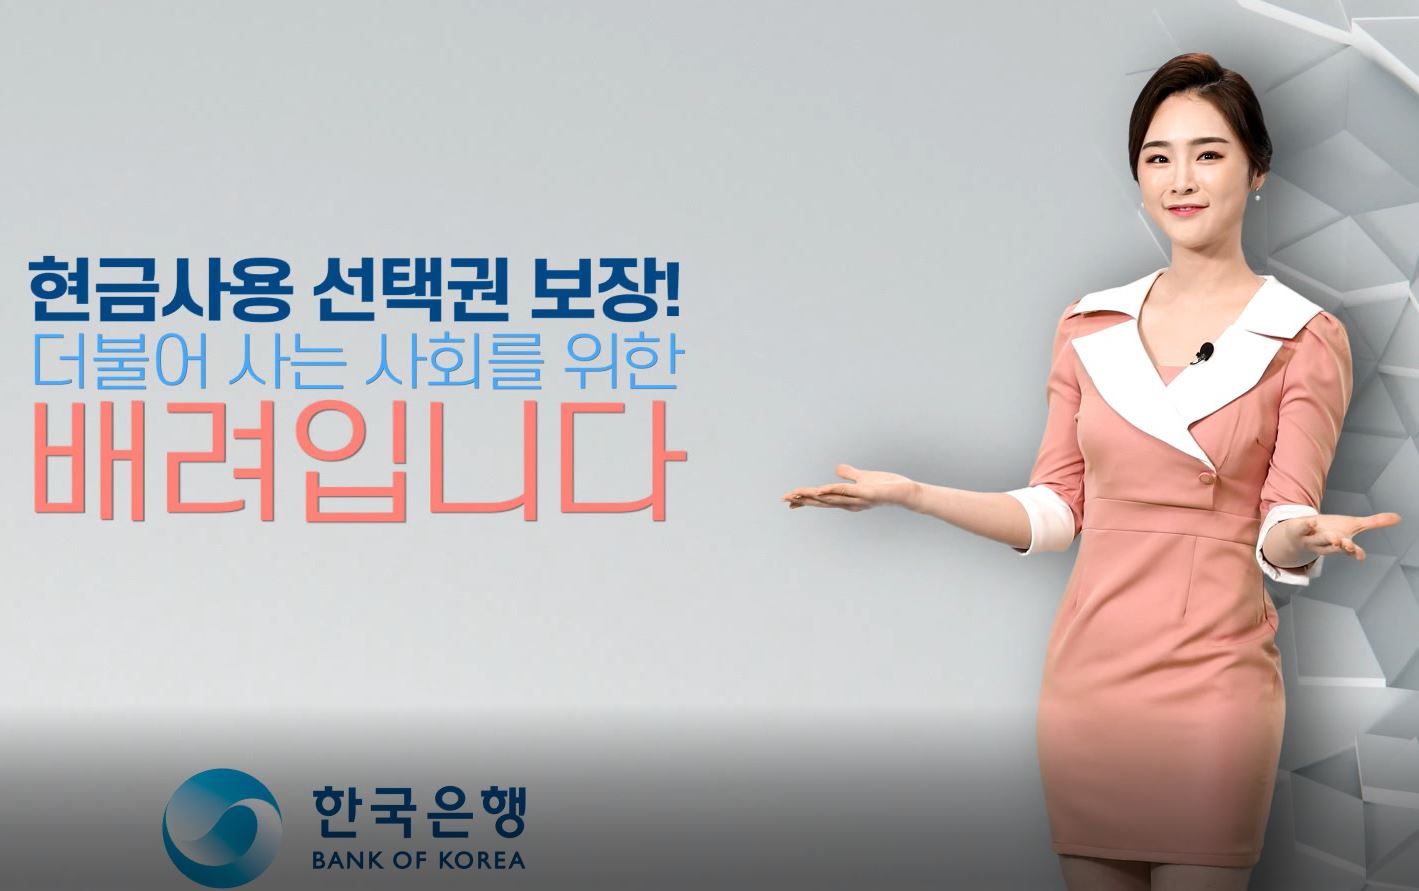 현금사용 선택권 보장!
더불어 사는 사회를 위한
배려입니다.

한국은행
BANK OF KOREA